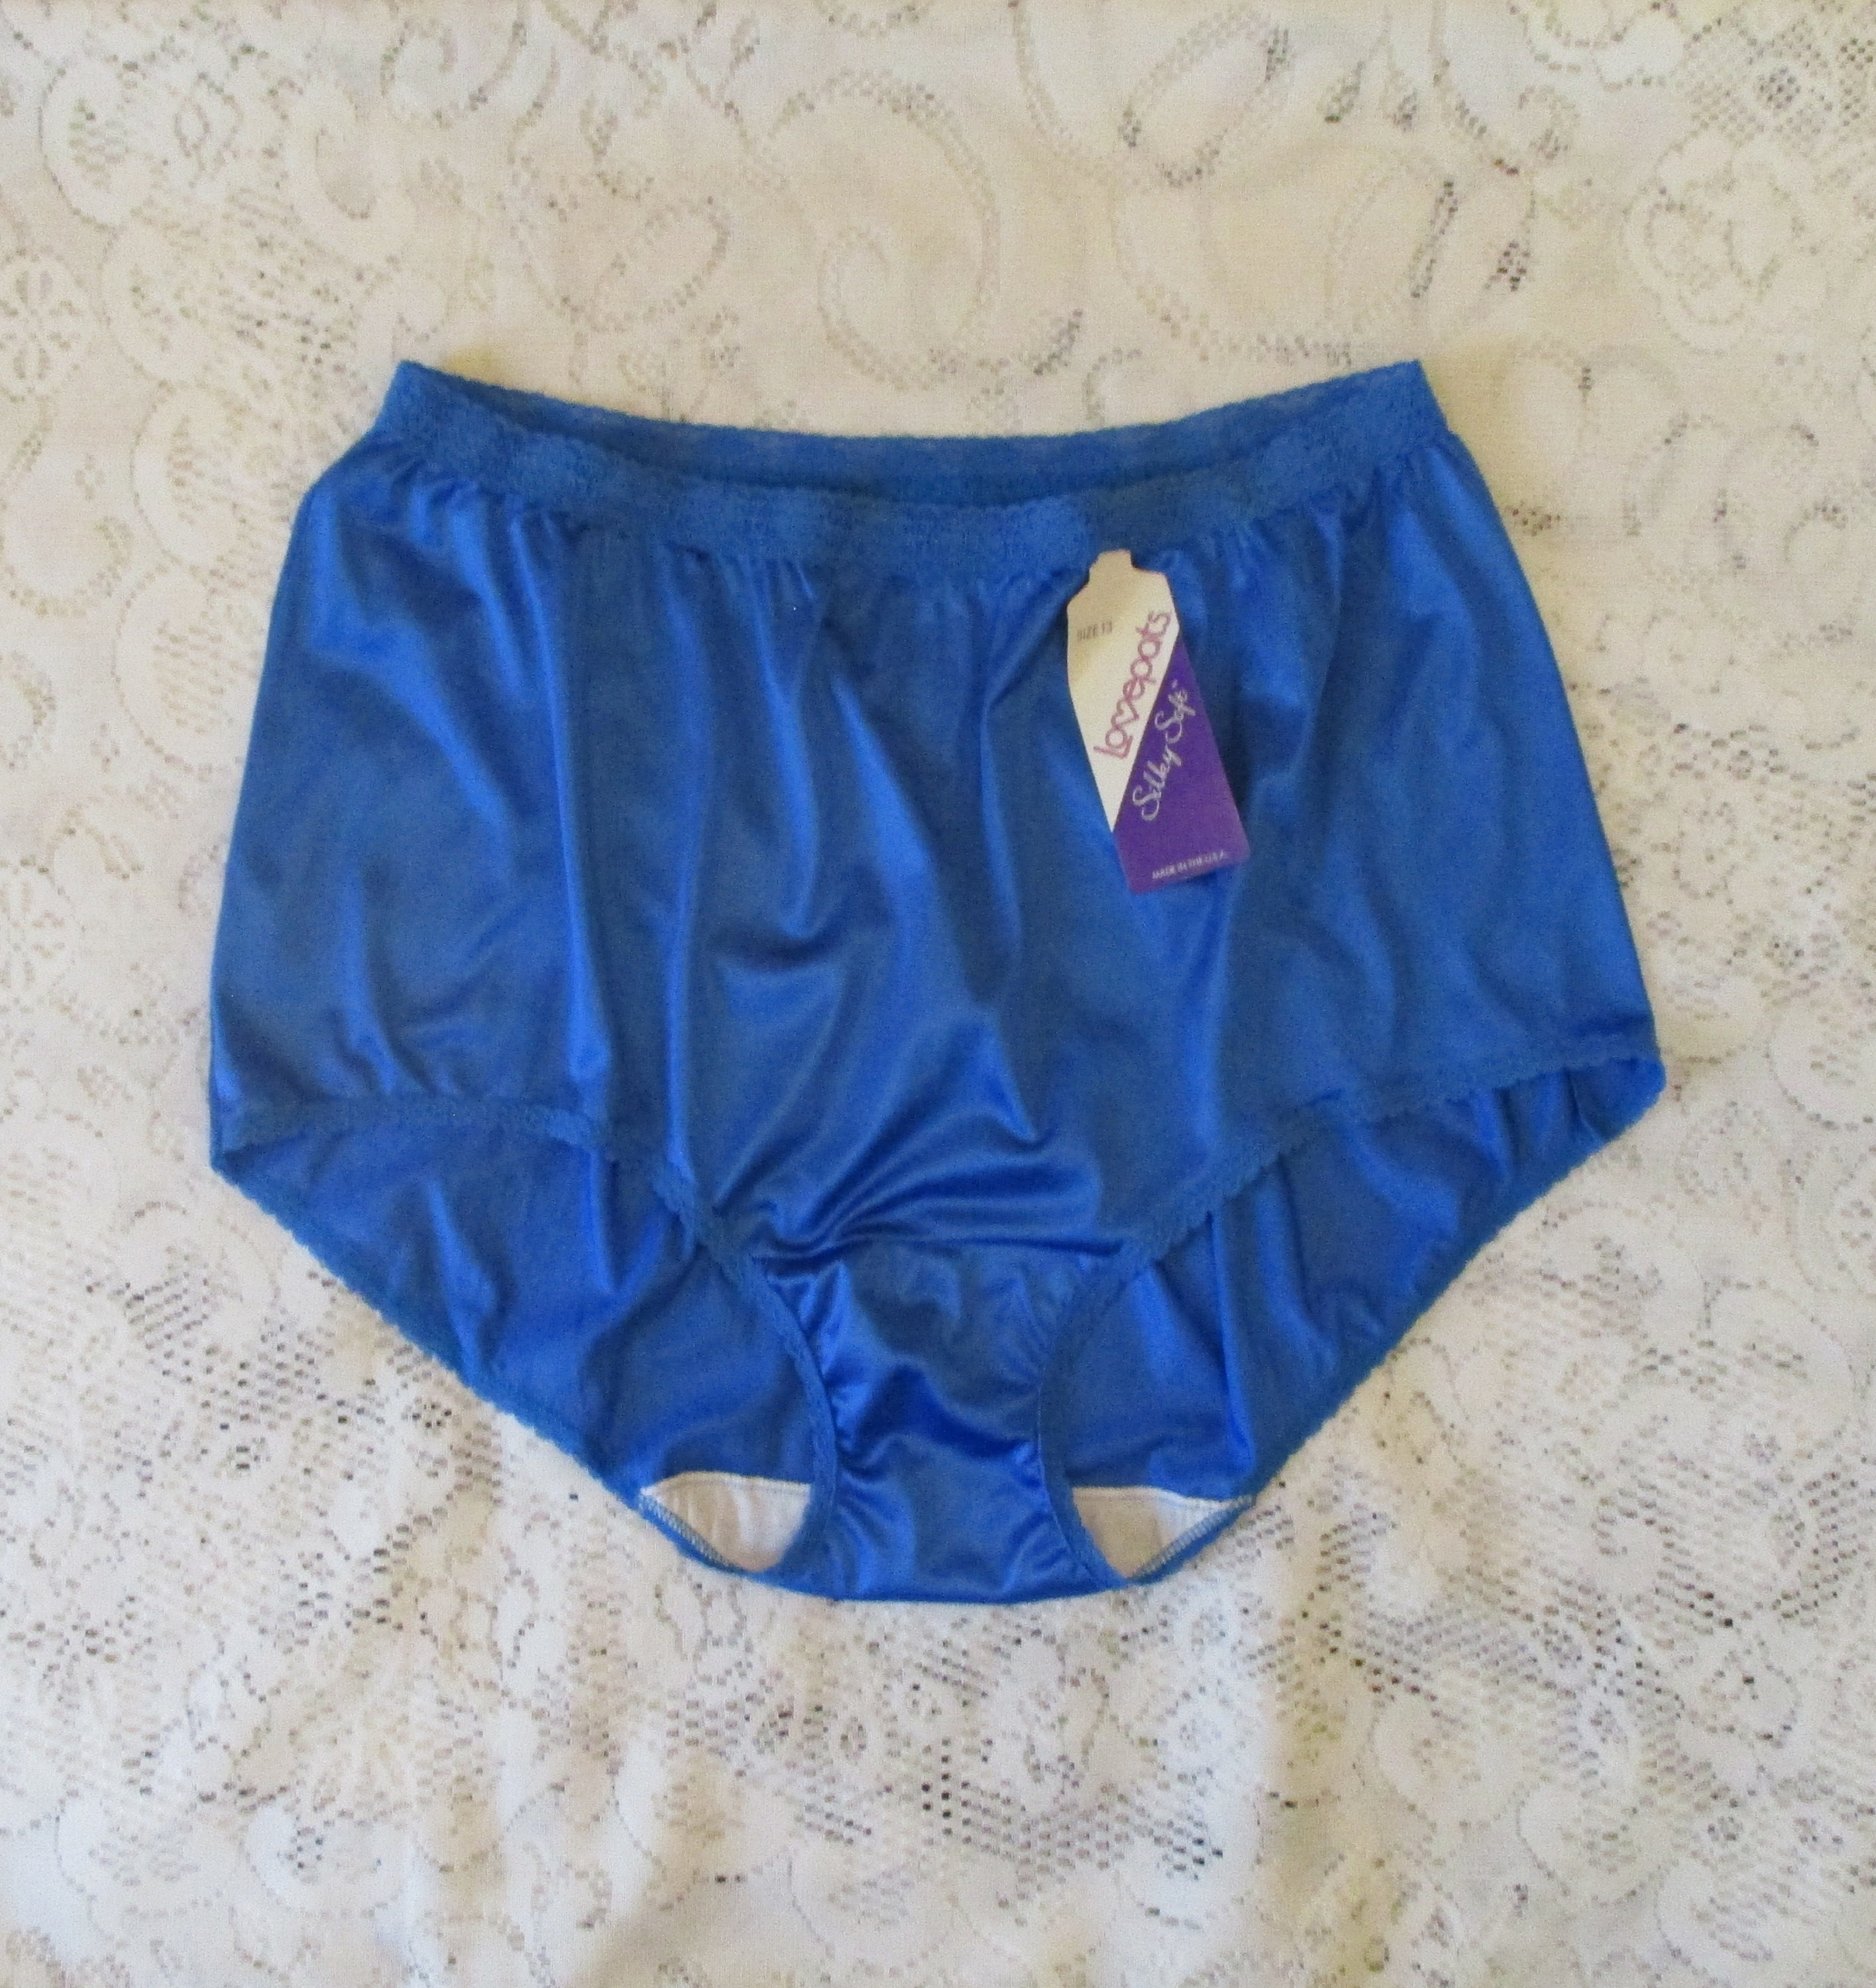 Vintage Hollywood Vassarette Nylon Tricot Briefs Panties Pale Blue